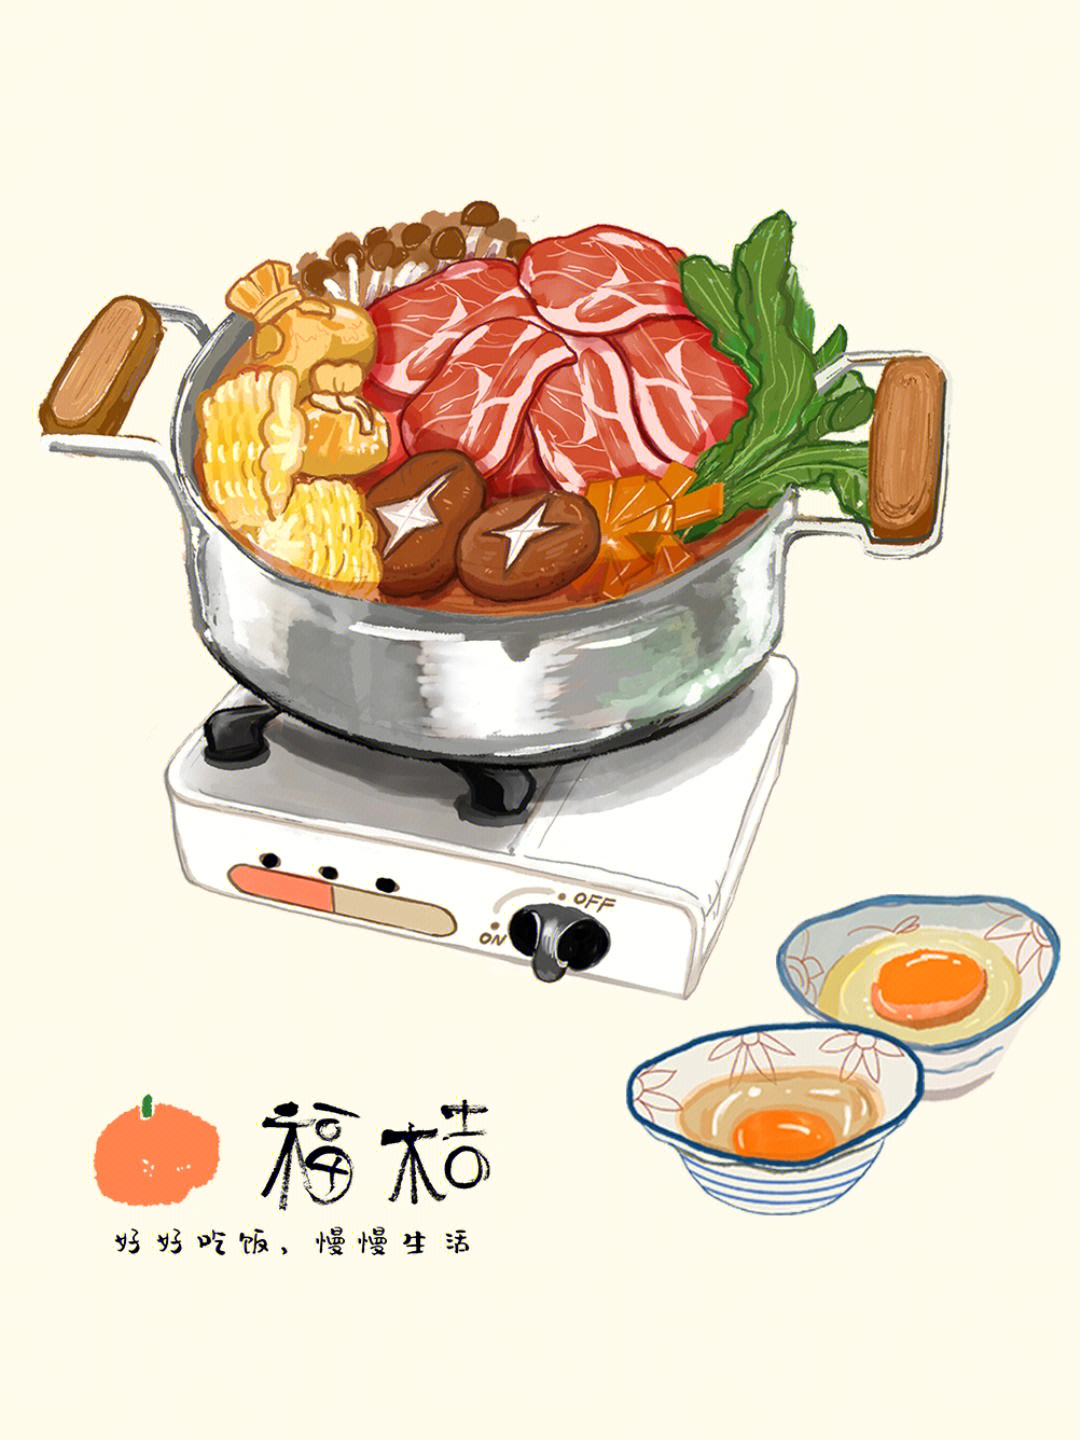 南京福桔可可爱爱的手绘菜单原稿